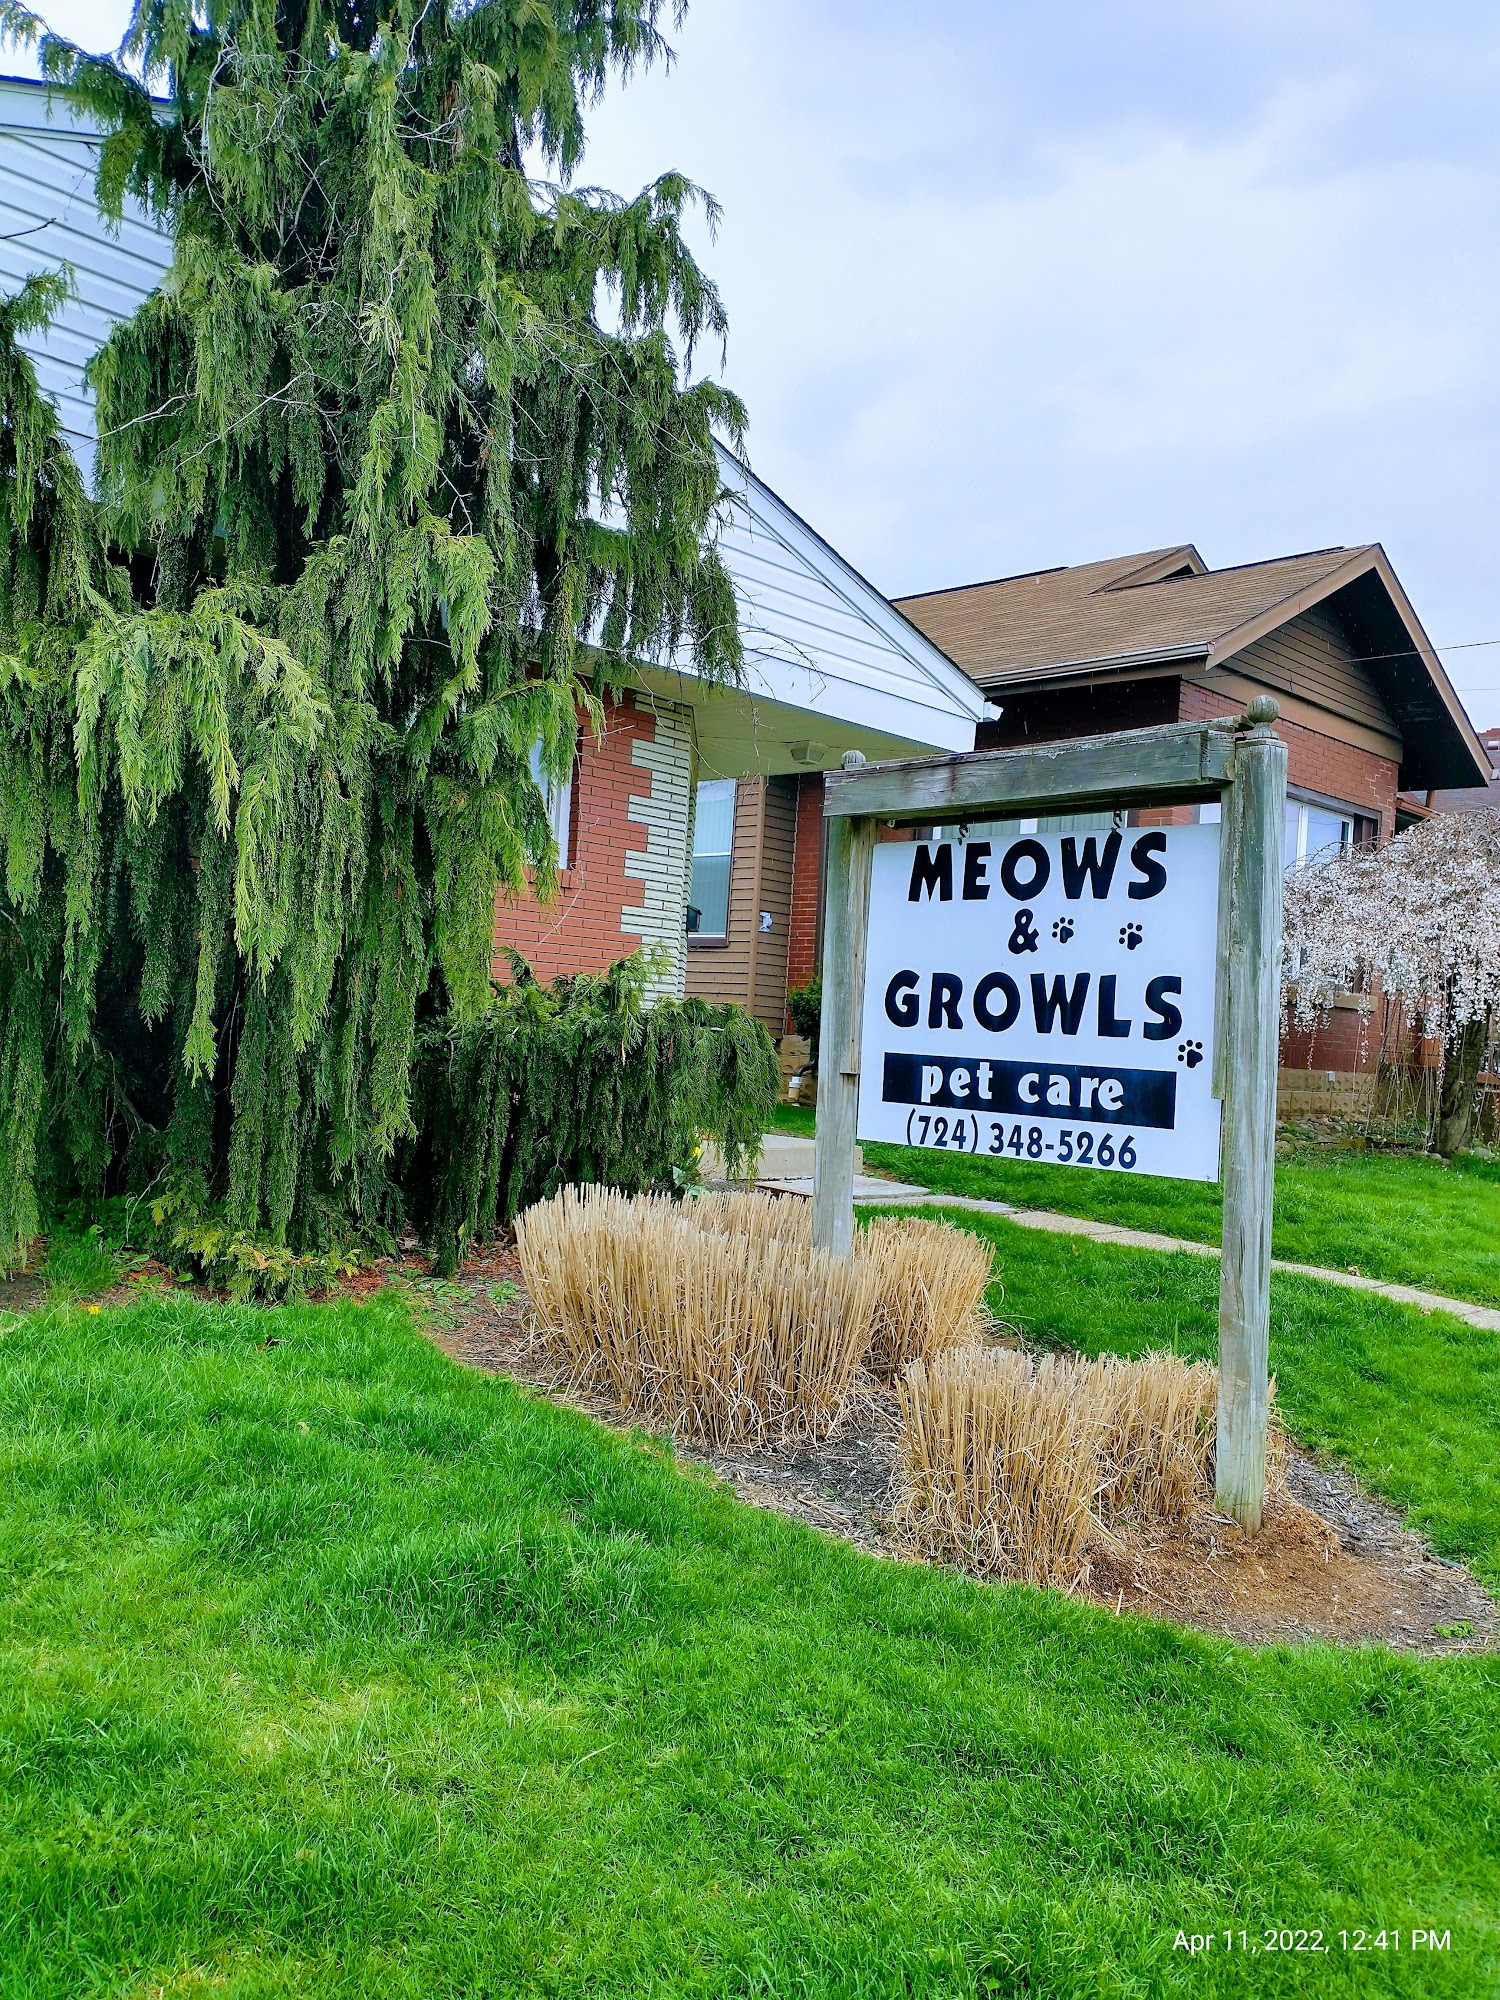 Meows & Growls 3517 Lincoln Ave, Finleyville Pennsylvania 15332